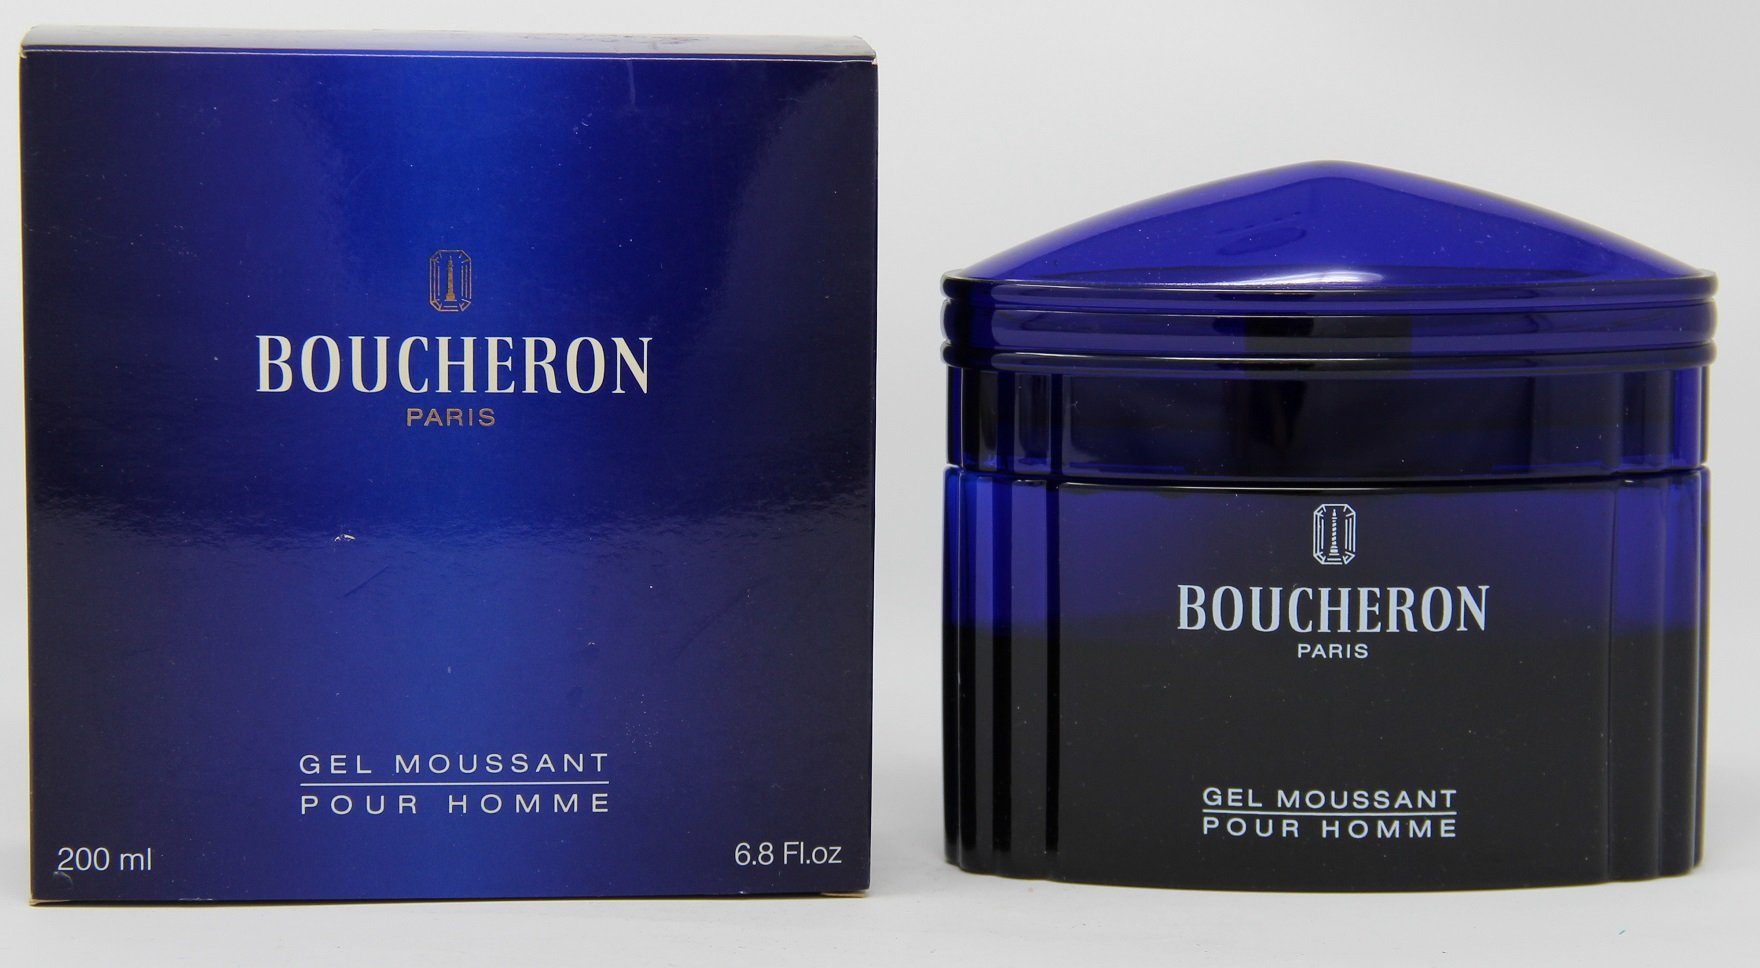 HOmme Boucheron Duschmousse BOUCHERON Pour Moussant 200ml Gel